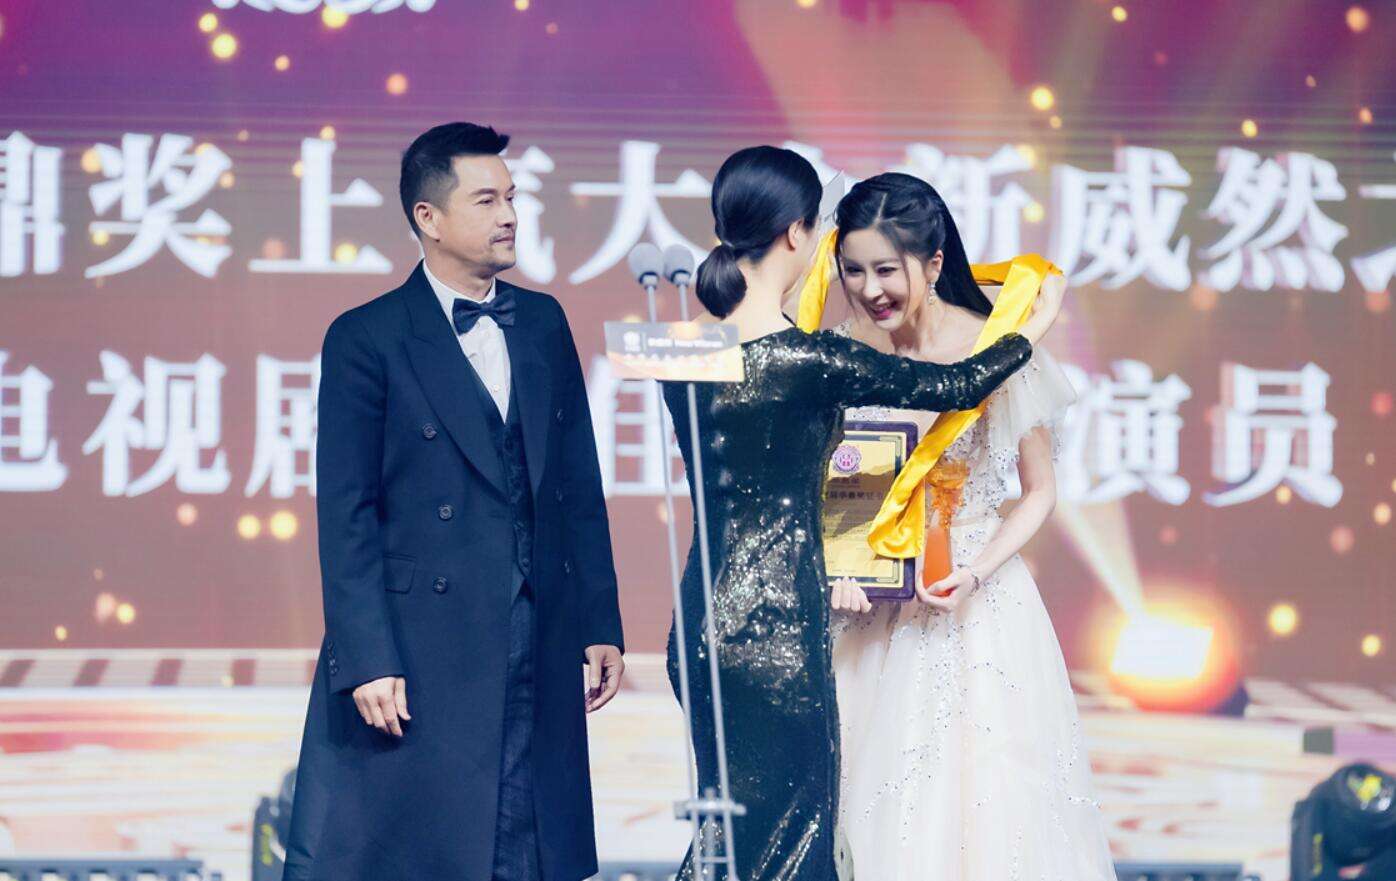 伊丽媛获华鼎奖中国百强电视剧最佳新锐演员，表示“要脚踏实地用心诠释好每一个角色”